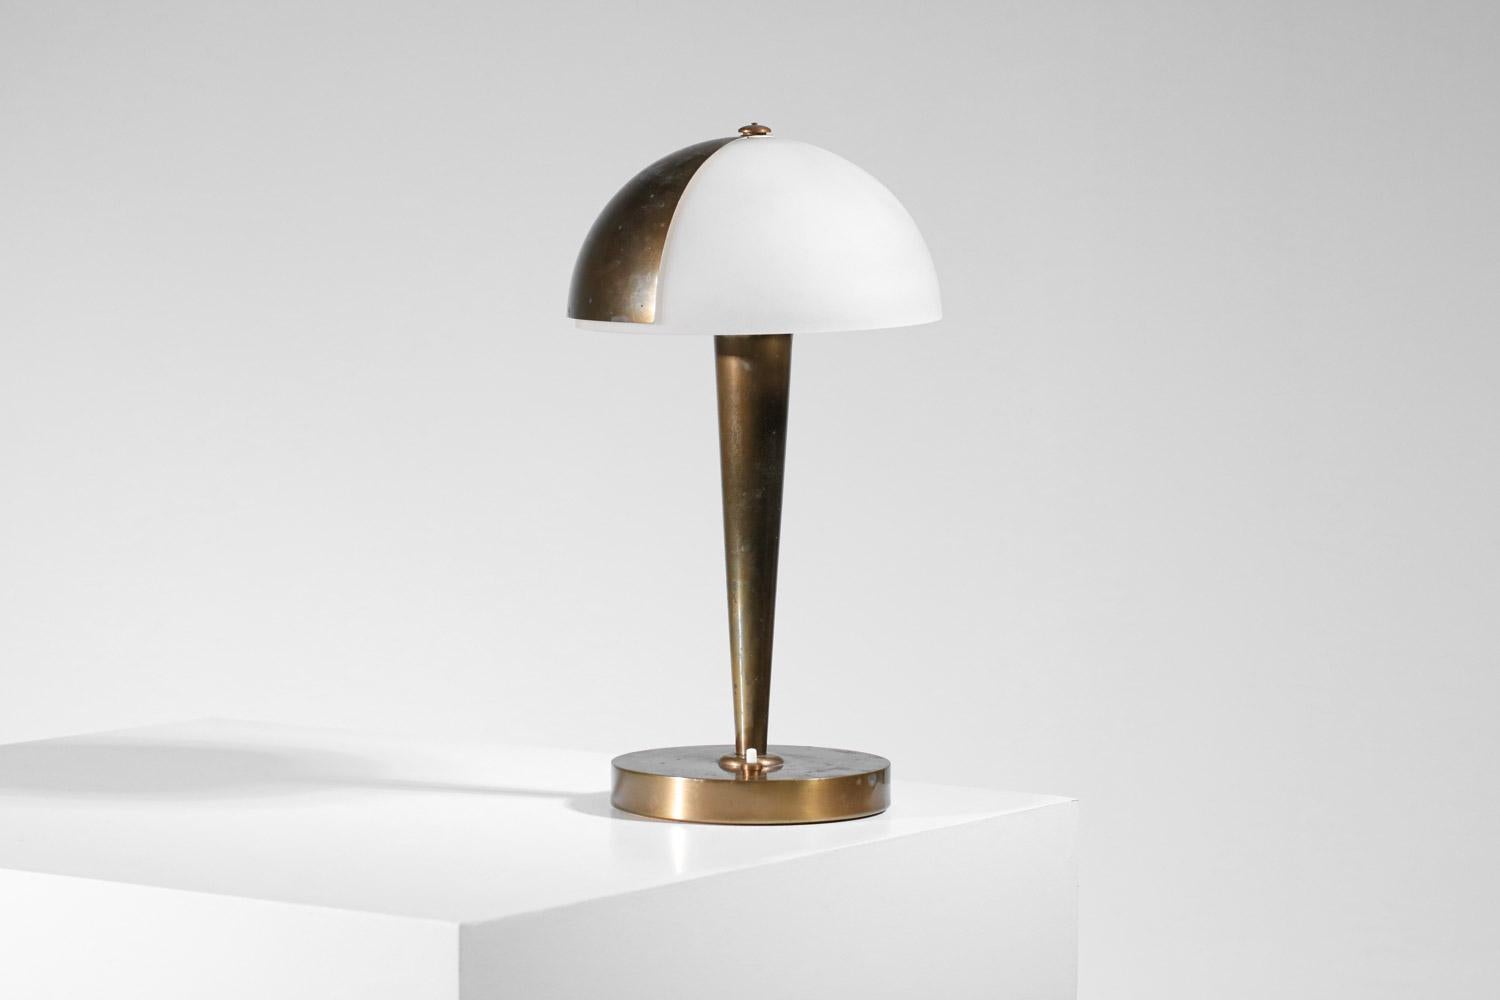 French art deco desk lamp, model 